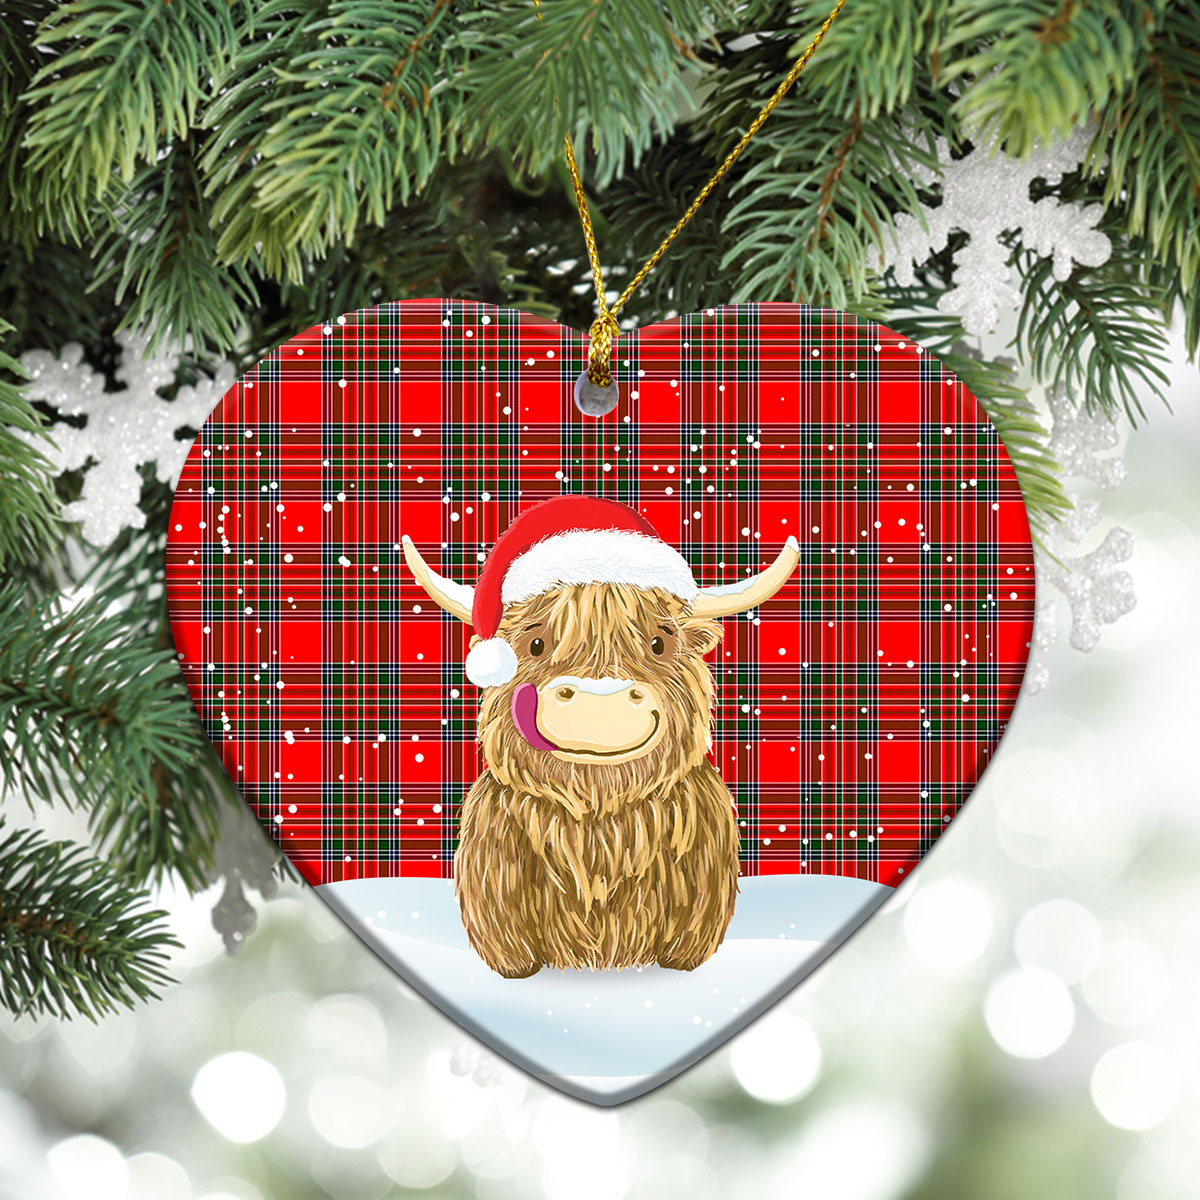 MacBain Tartan Christmas Ceramic Ornament - Highland Cows Style